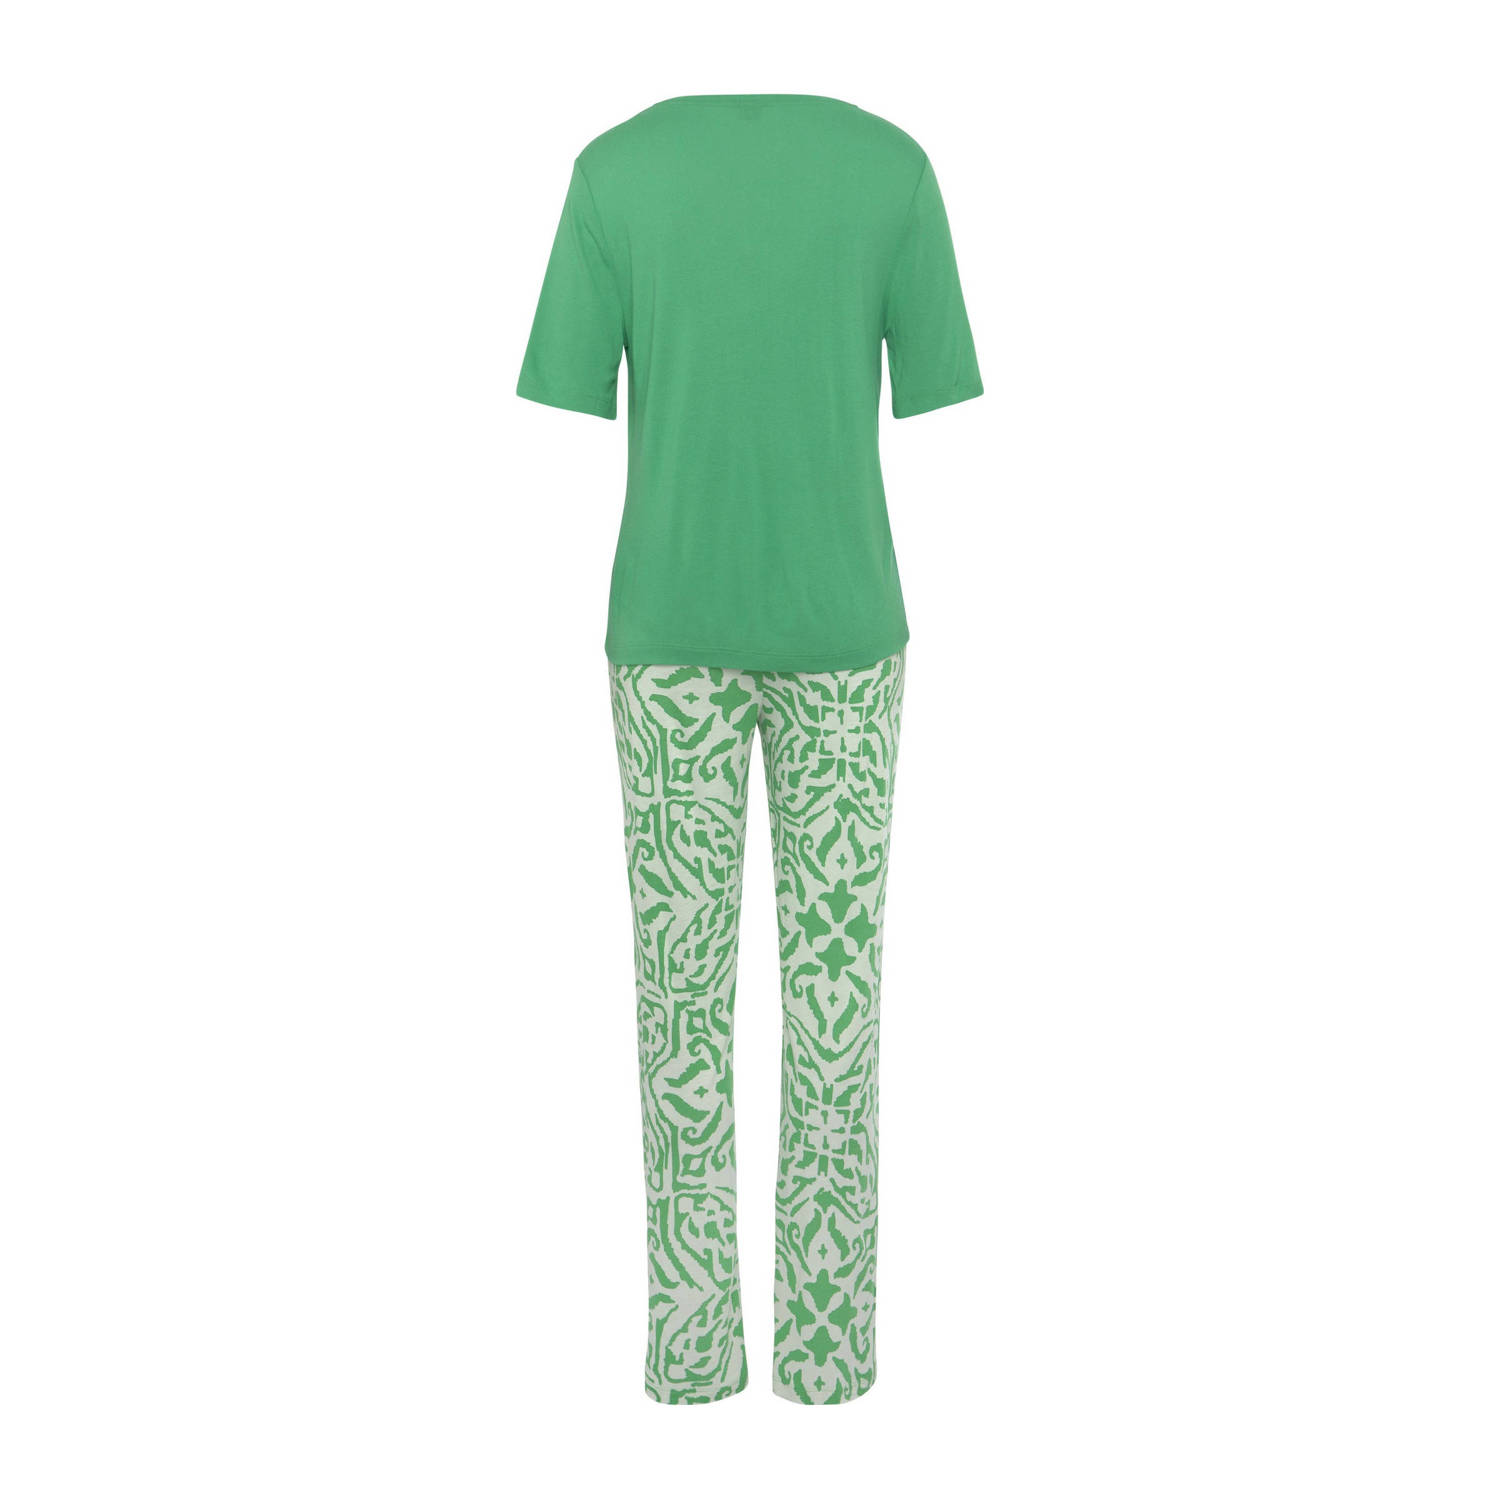 s.Oliver pyjama groen